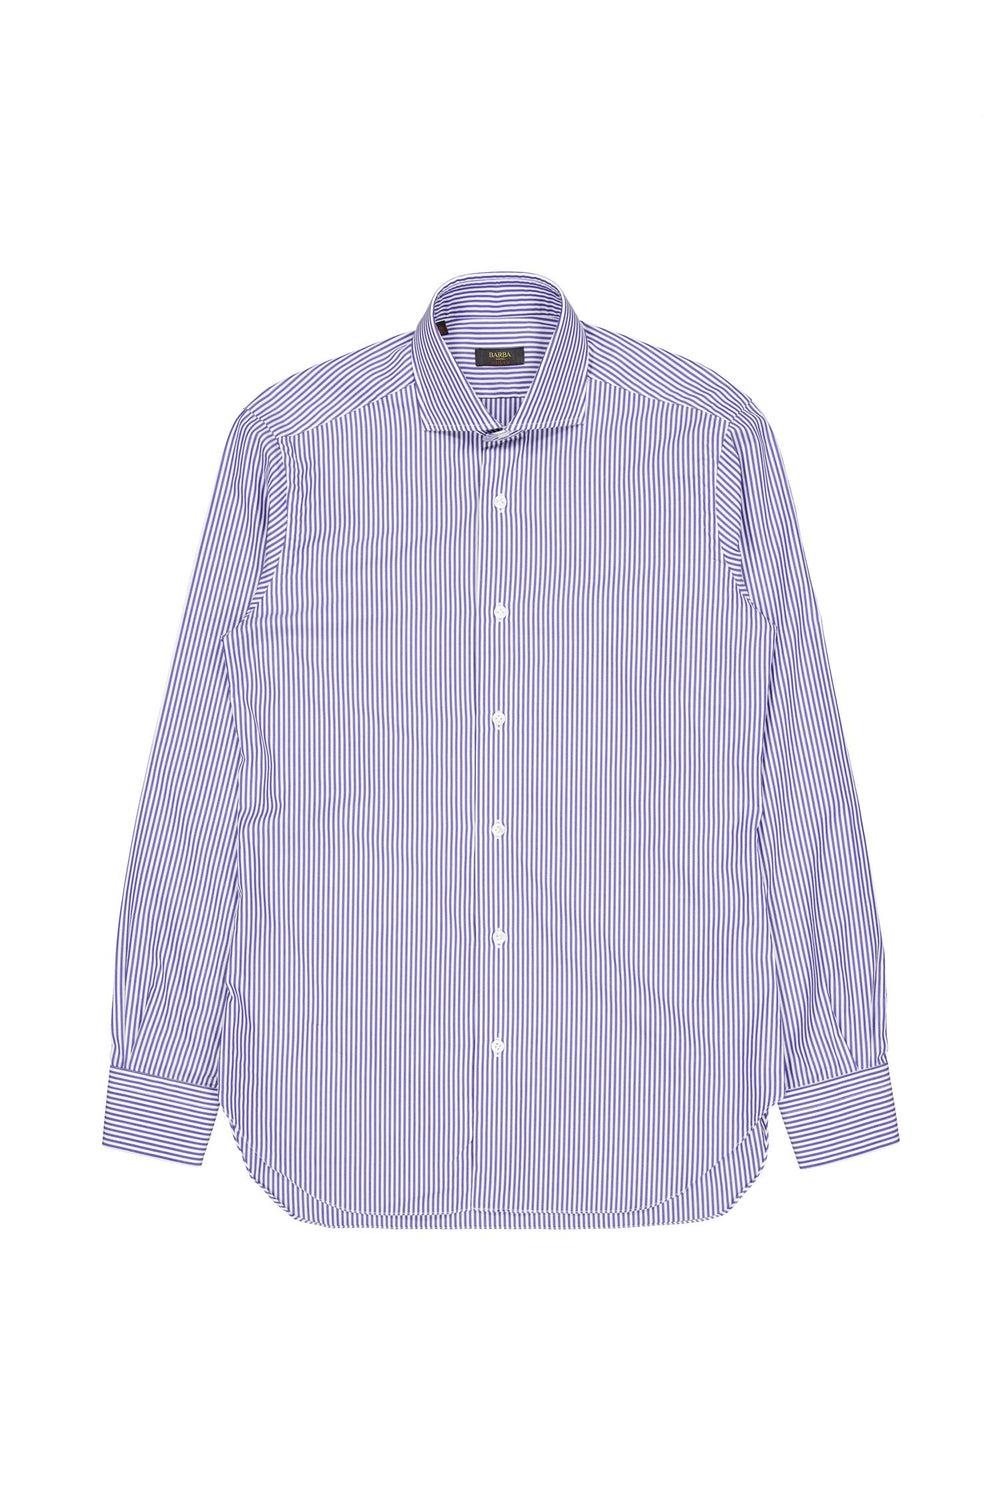 Culto Cotton Shirt Blue Stripes-Skjorter-Bogartstore